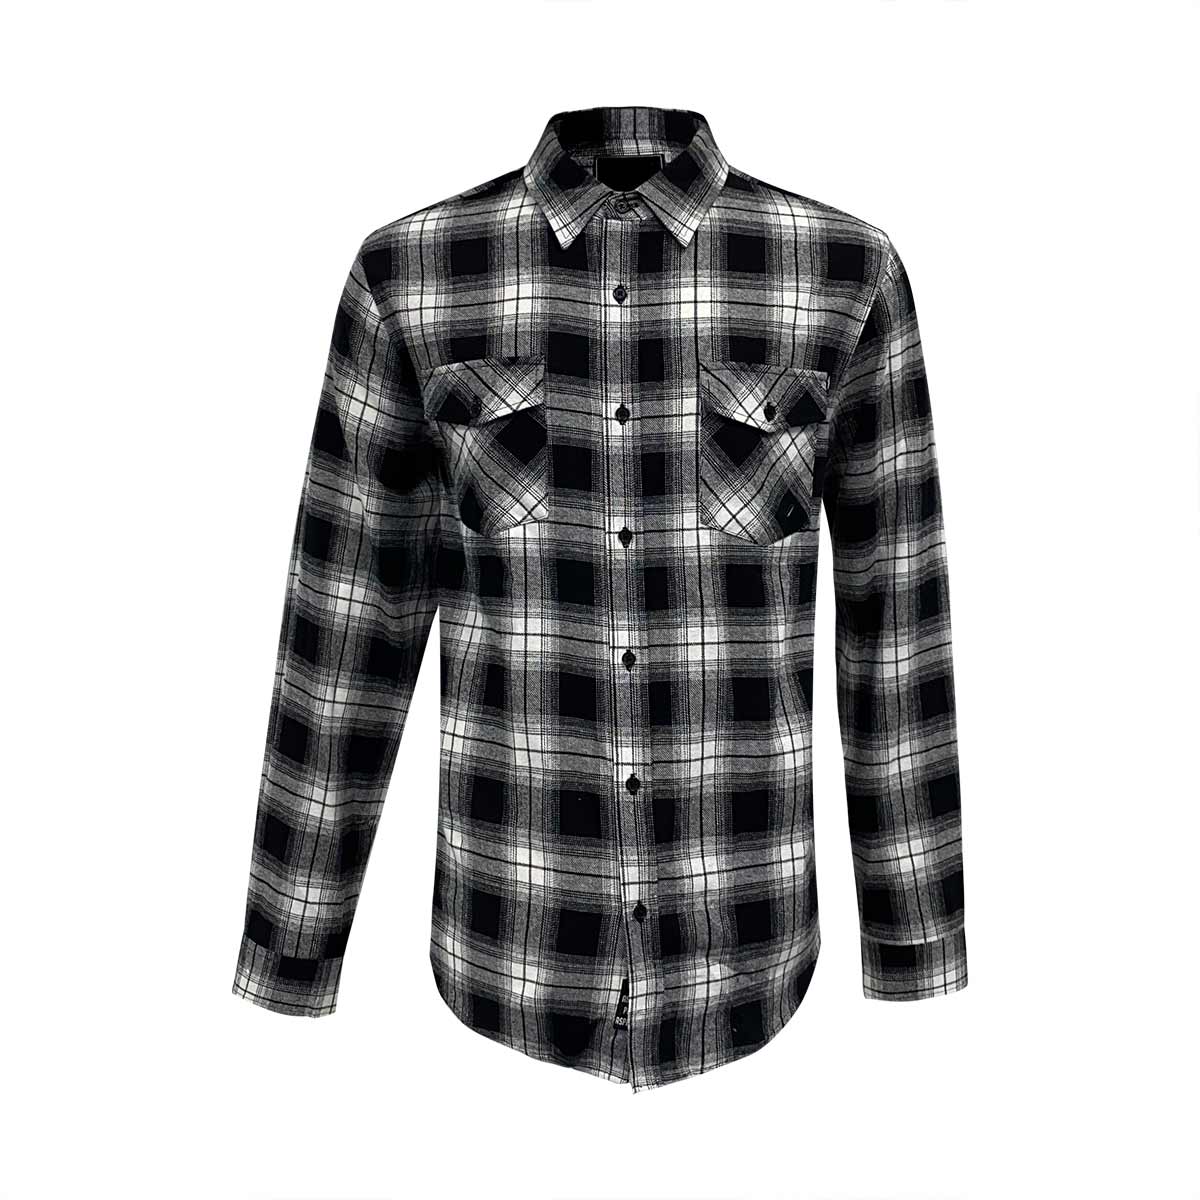 Black plaids classic style 100% cotton man flannel shirts